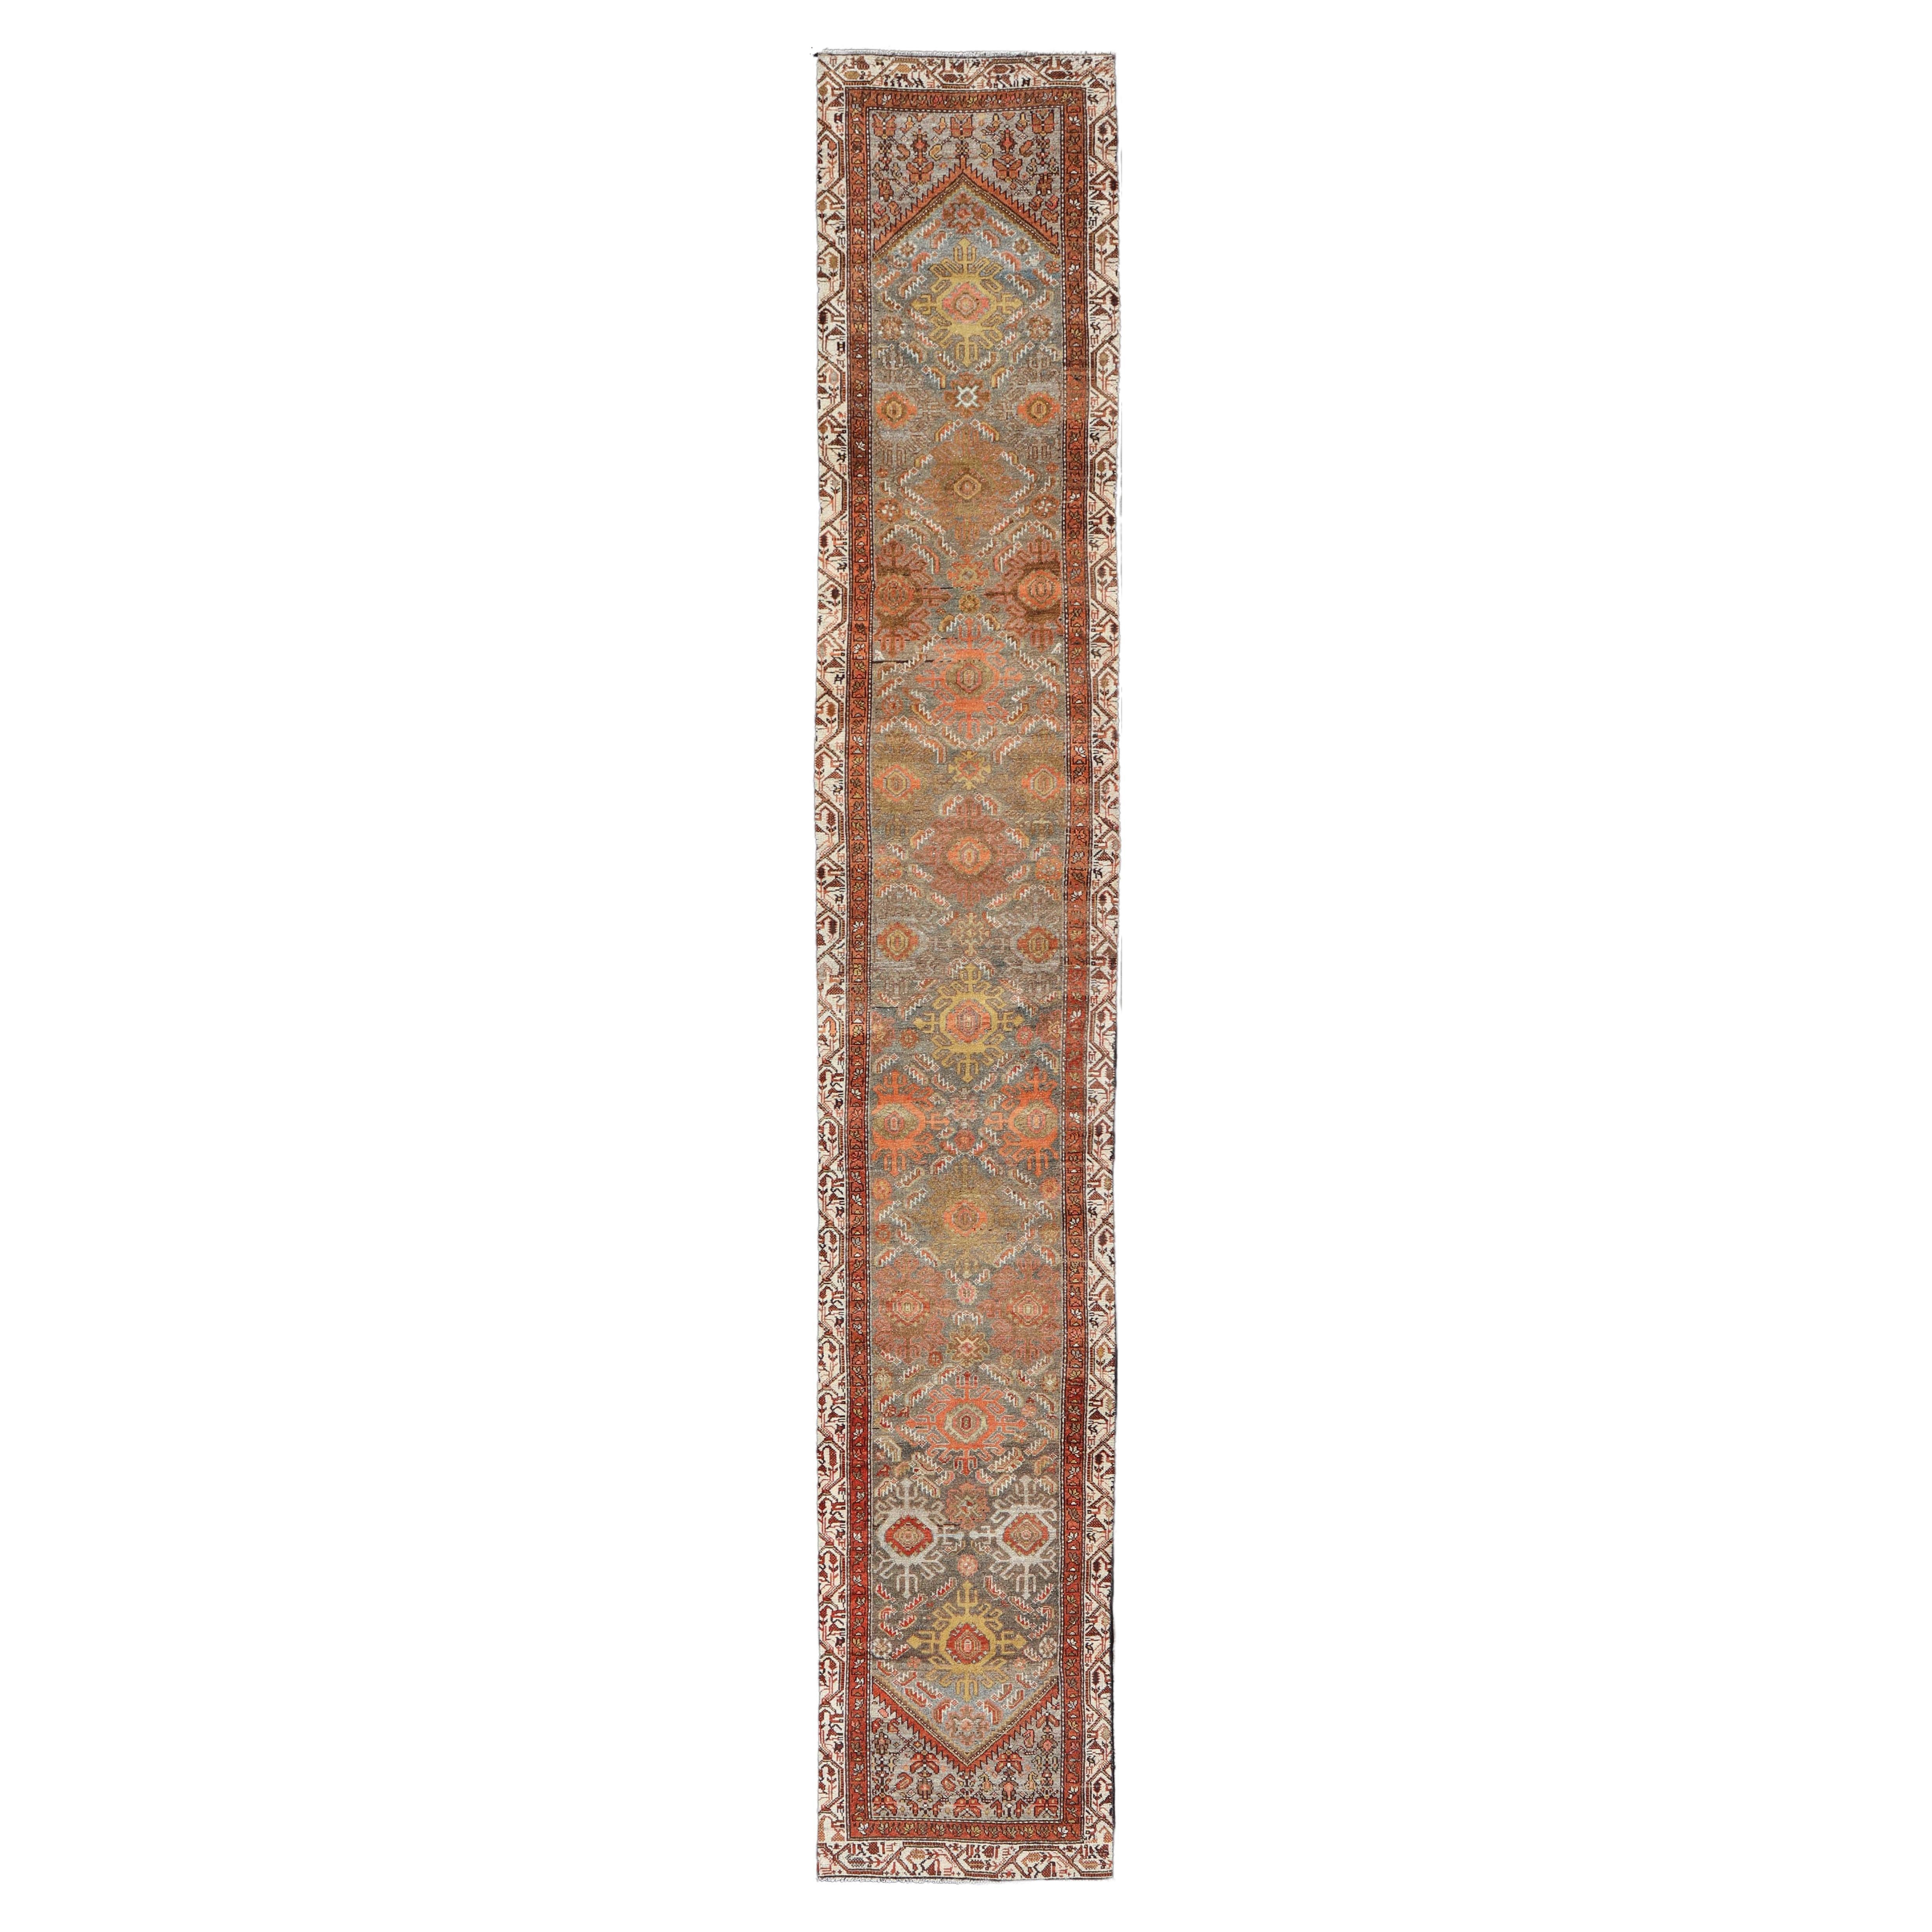 Long tapis de couloir persan ancien Hamadan dans les tons marron, gris et terreux